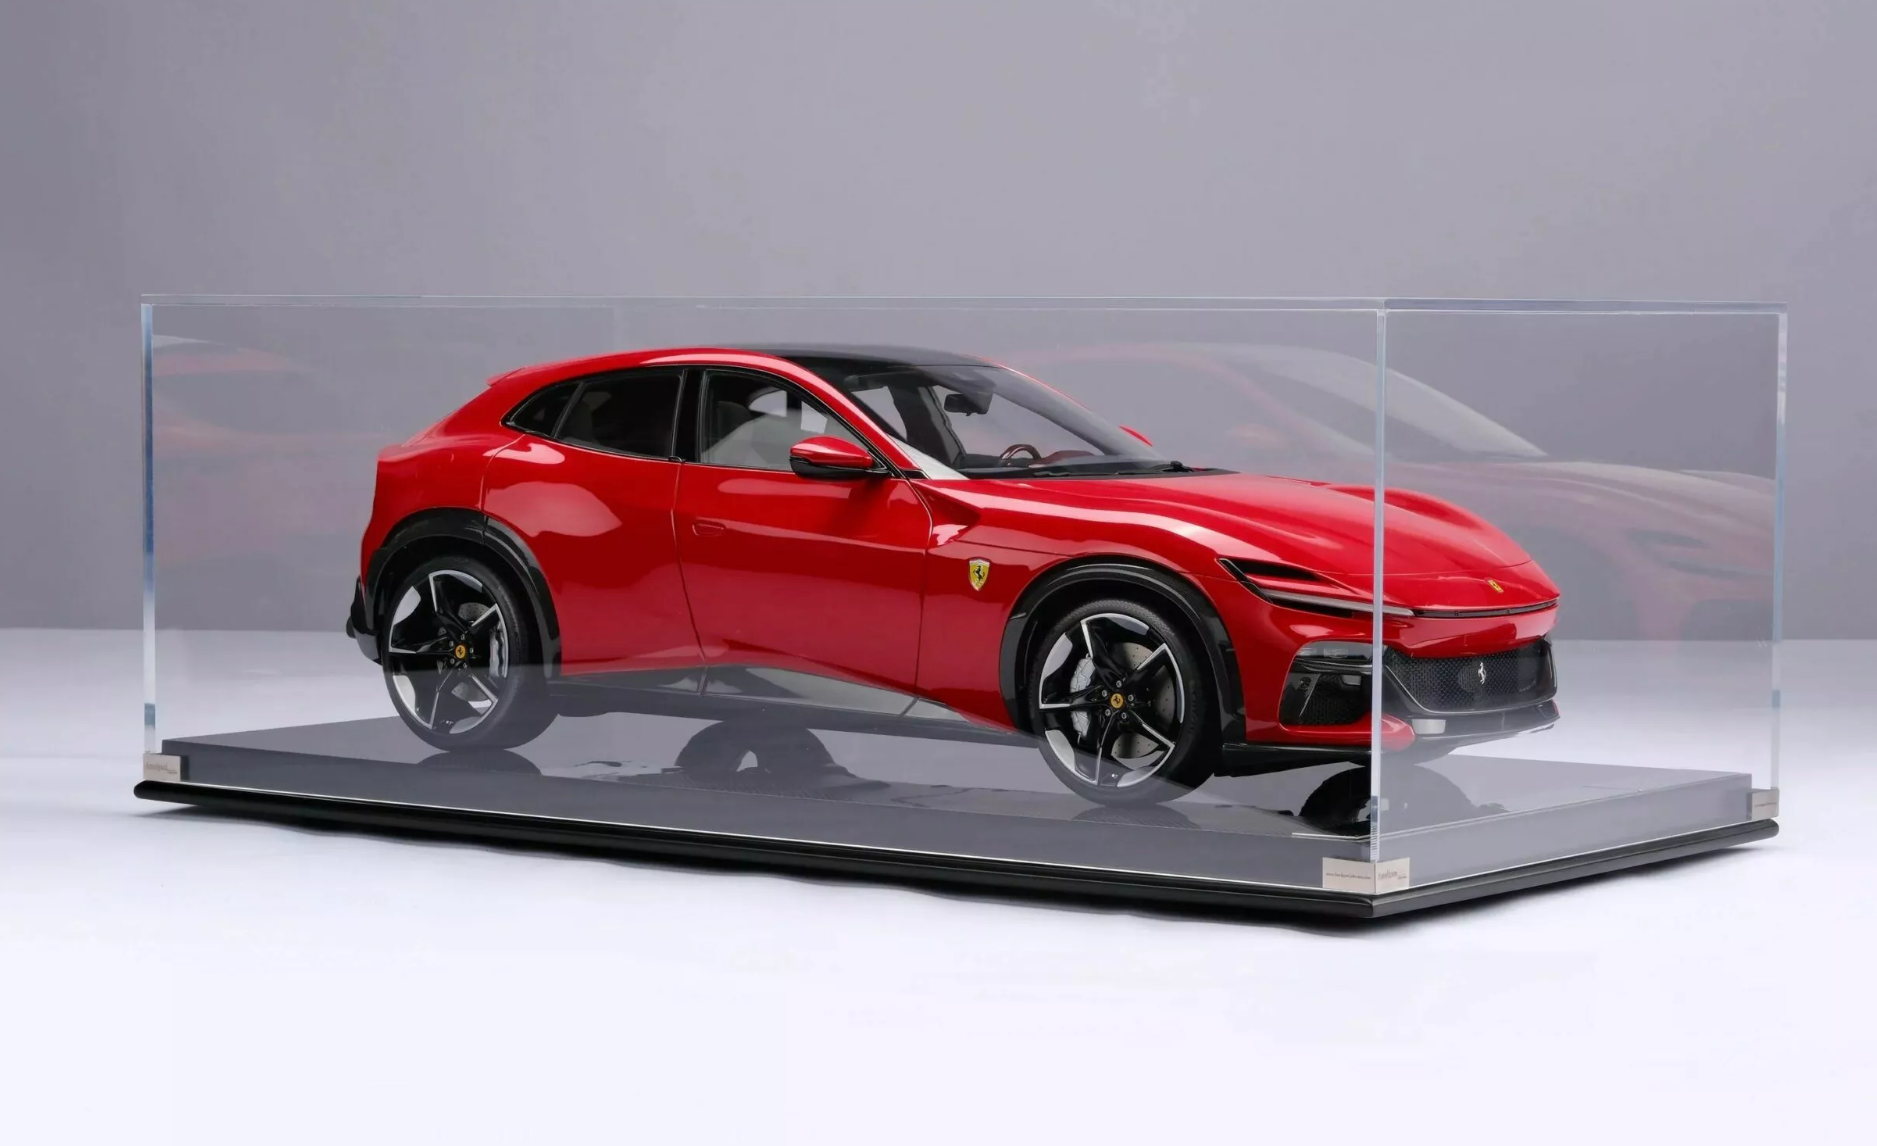 Siêu xe Ferrari Purosangue mô hình sản xuất giới hạn, giá gần 480 triệu đồng - Ảnh 1.